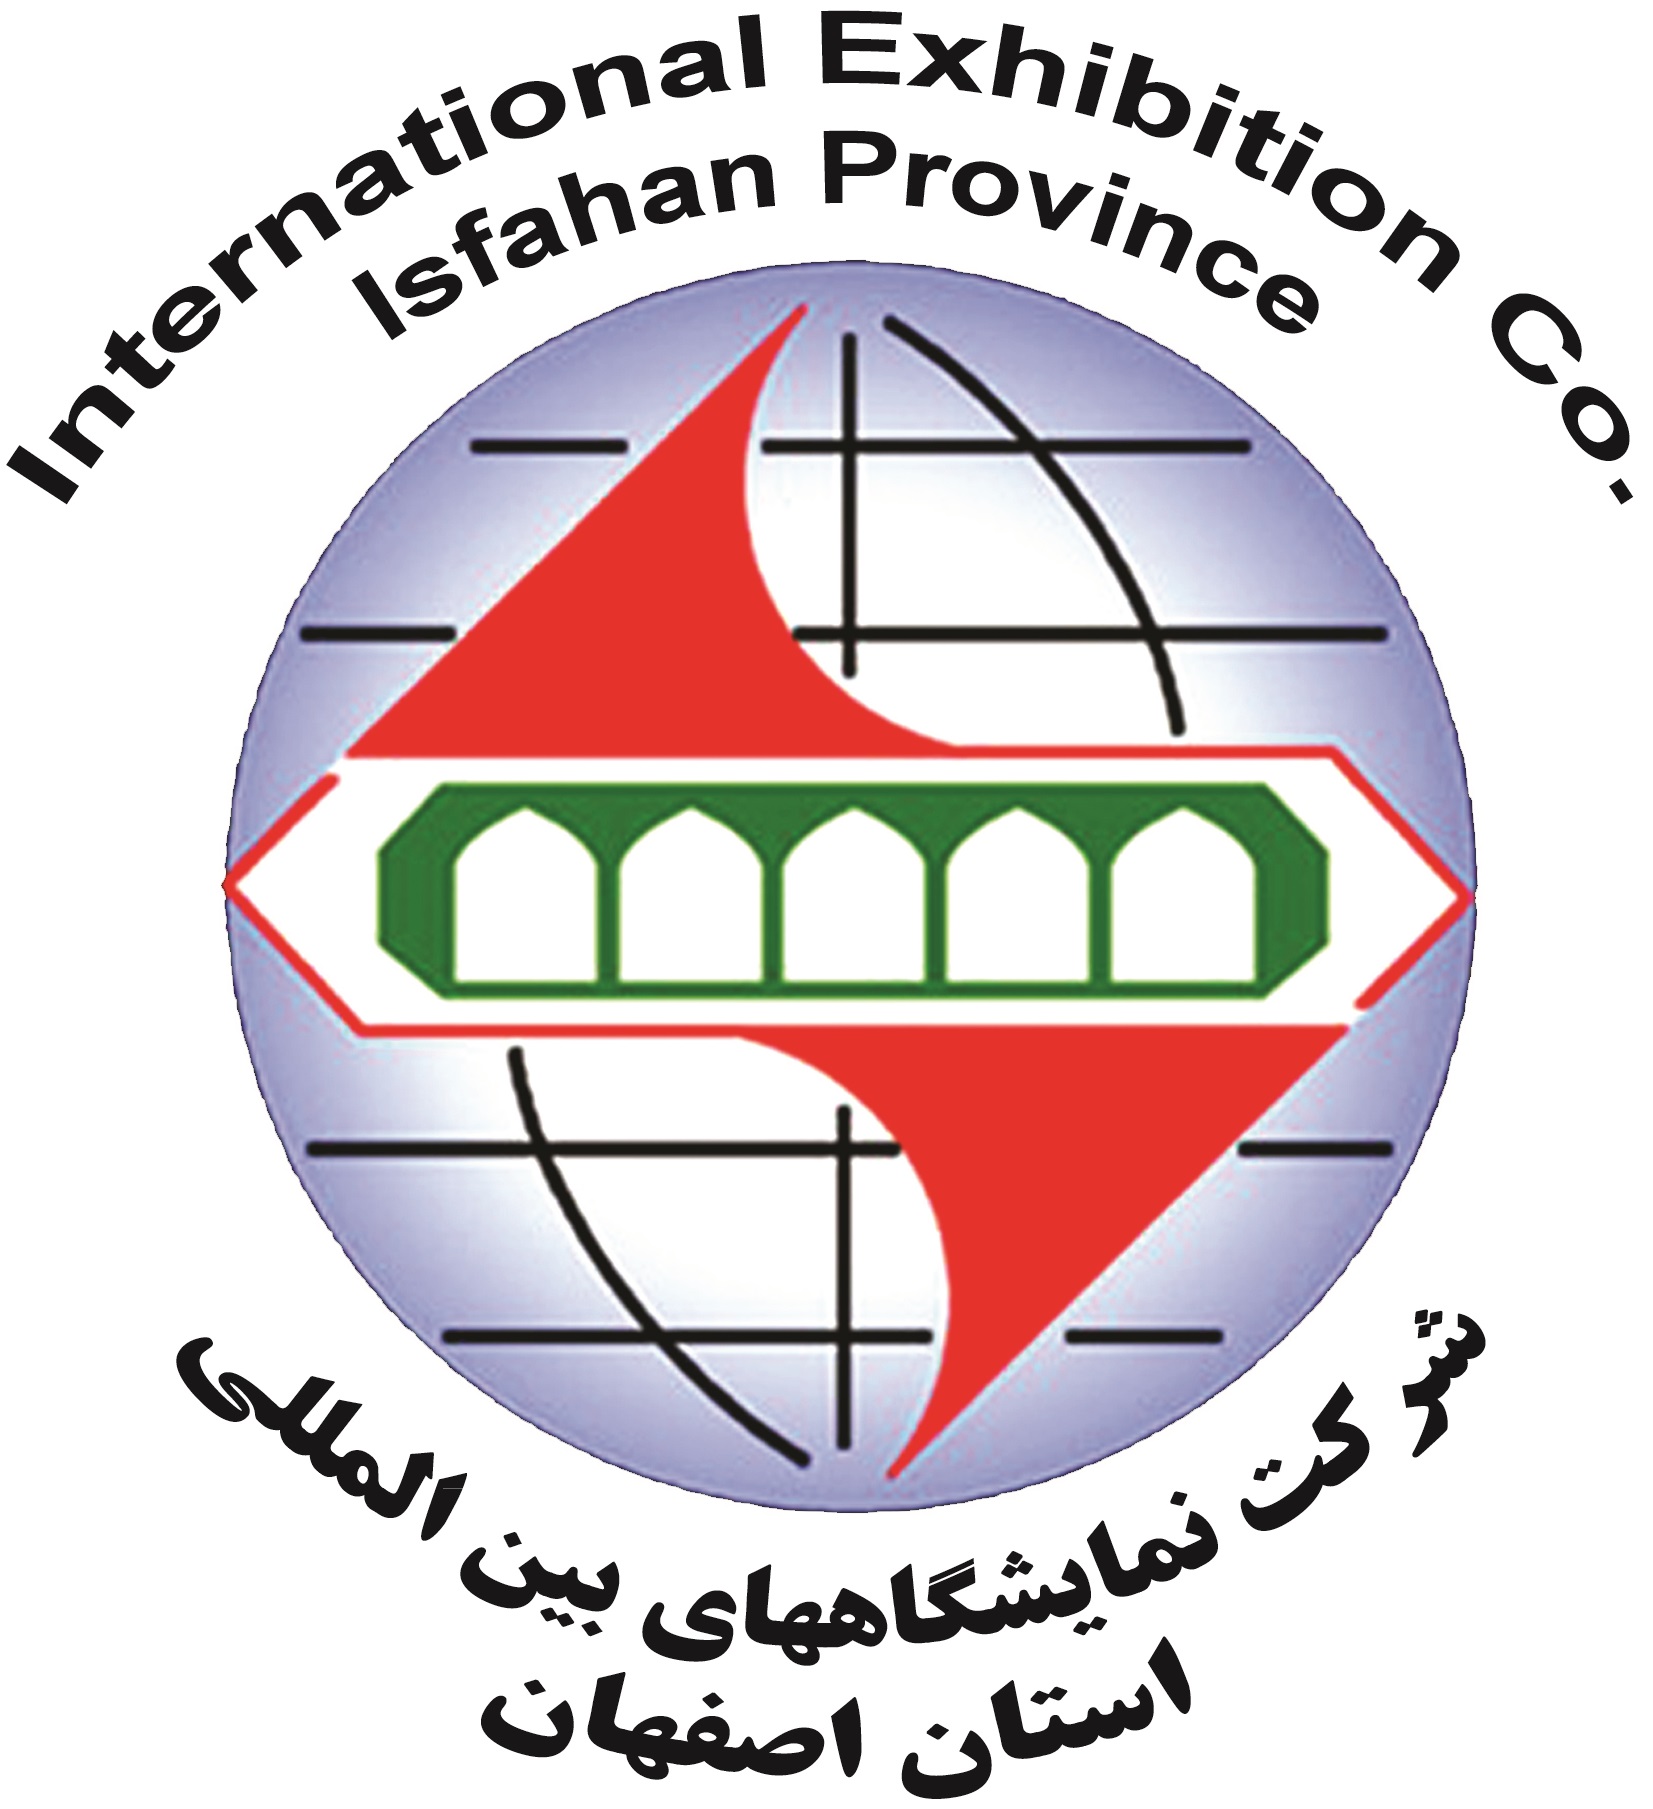 فهرست نمایشگاه های بین المللی اصفهان